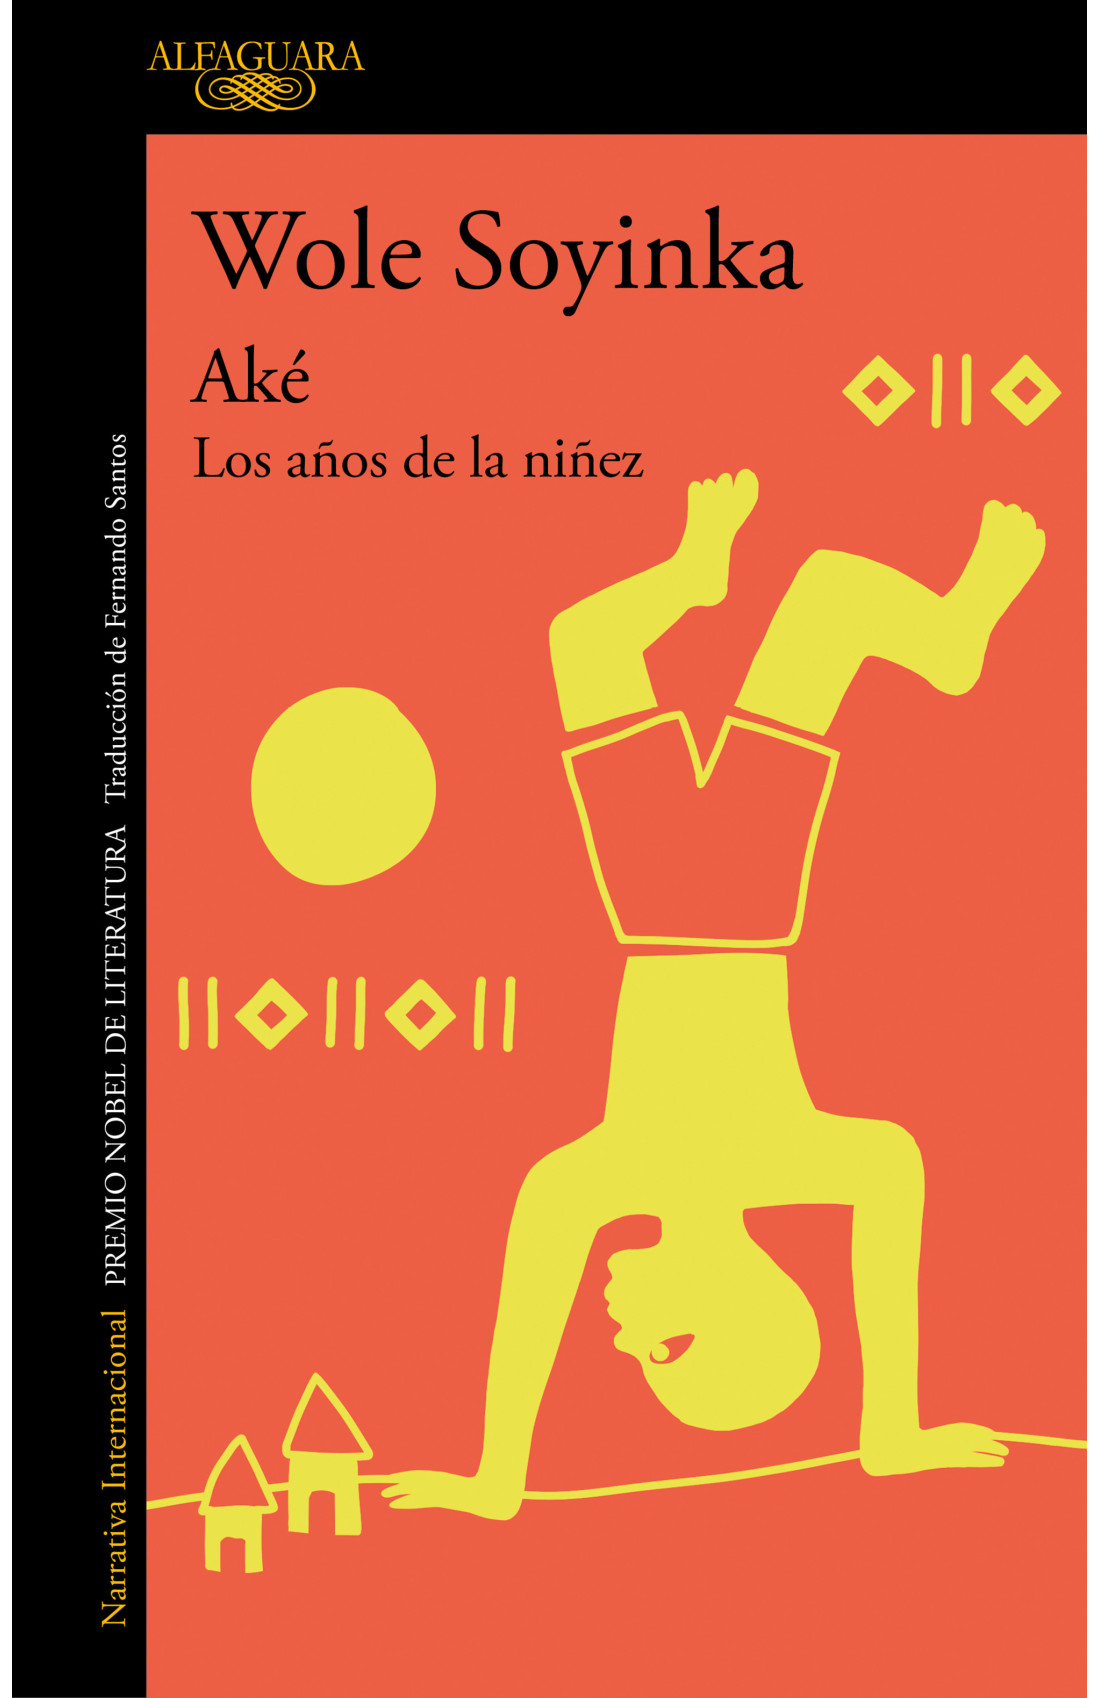 Portada del libro "Aké. Los años de la niñez", de Wole Soyinka. (Penguin Random House).